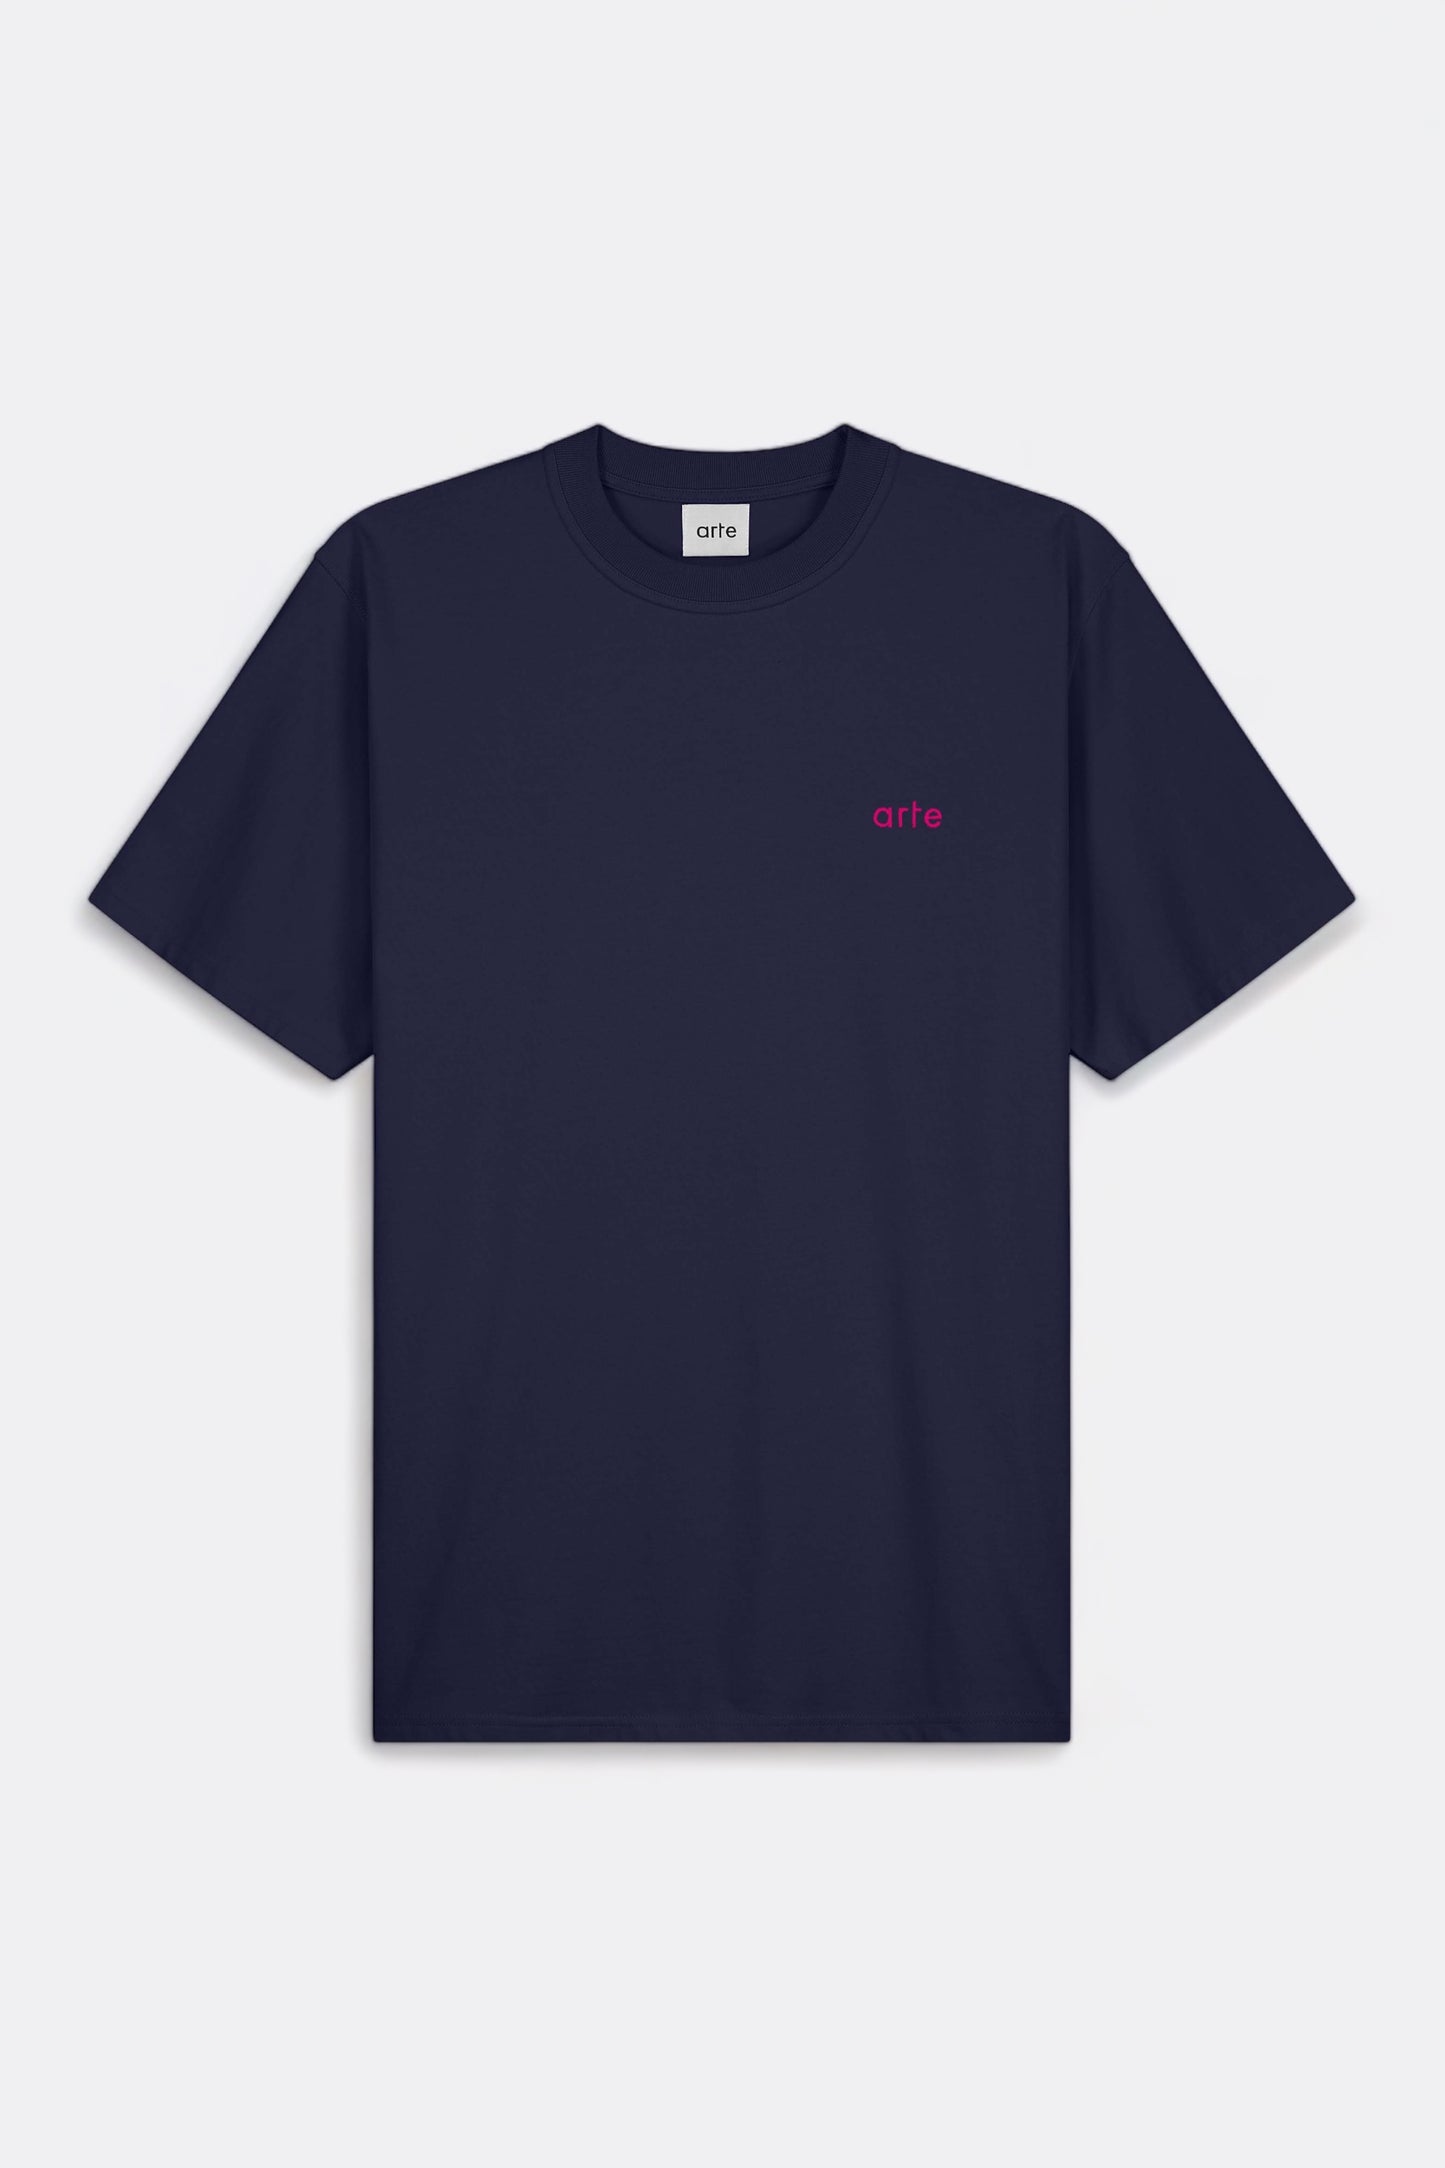 Arte - Teo Back Multi Runner T-shirt (Navy)